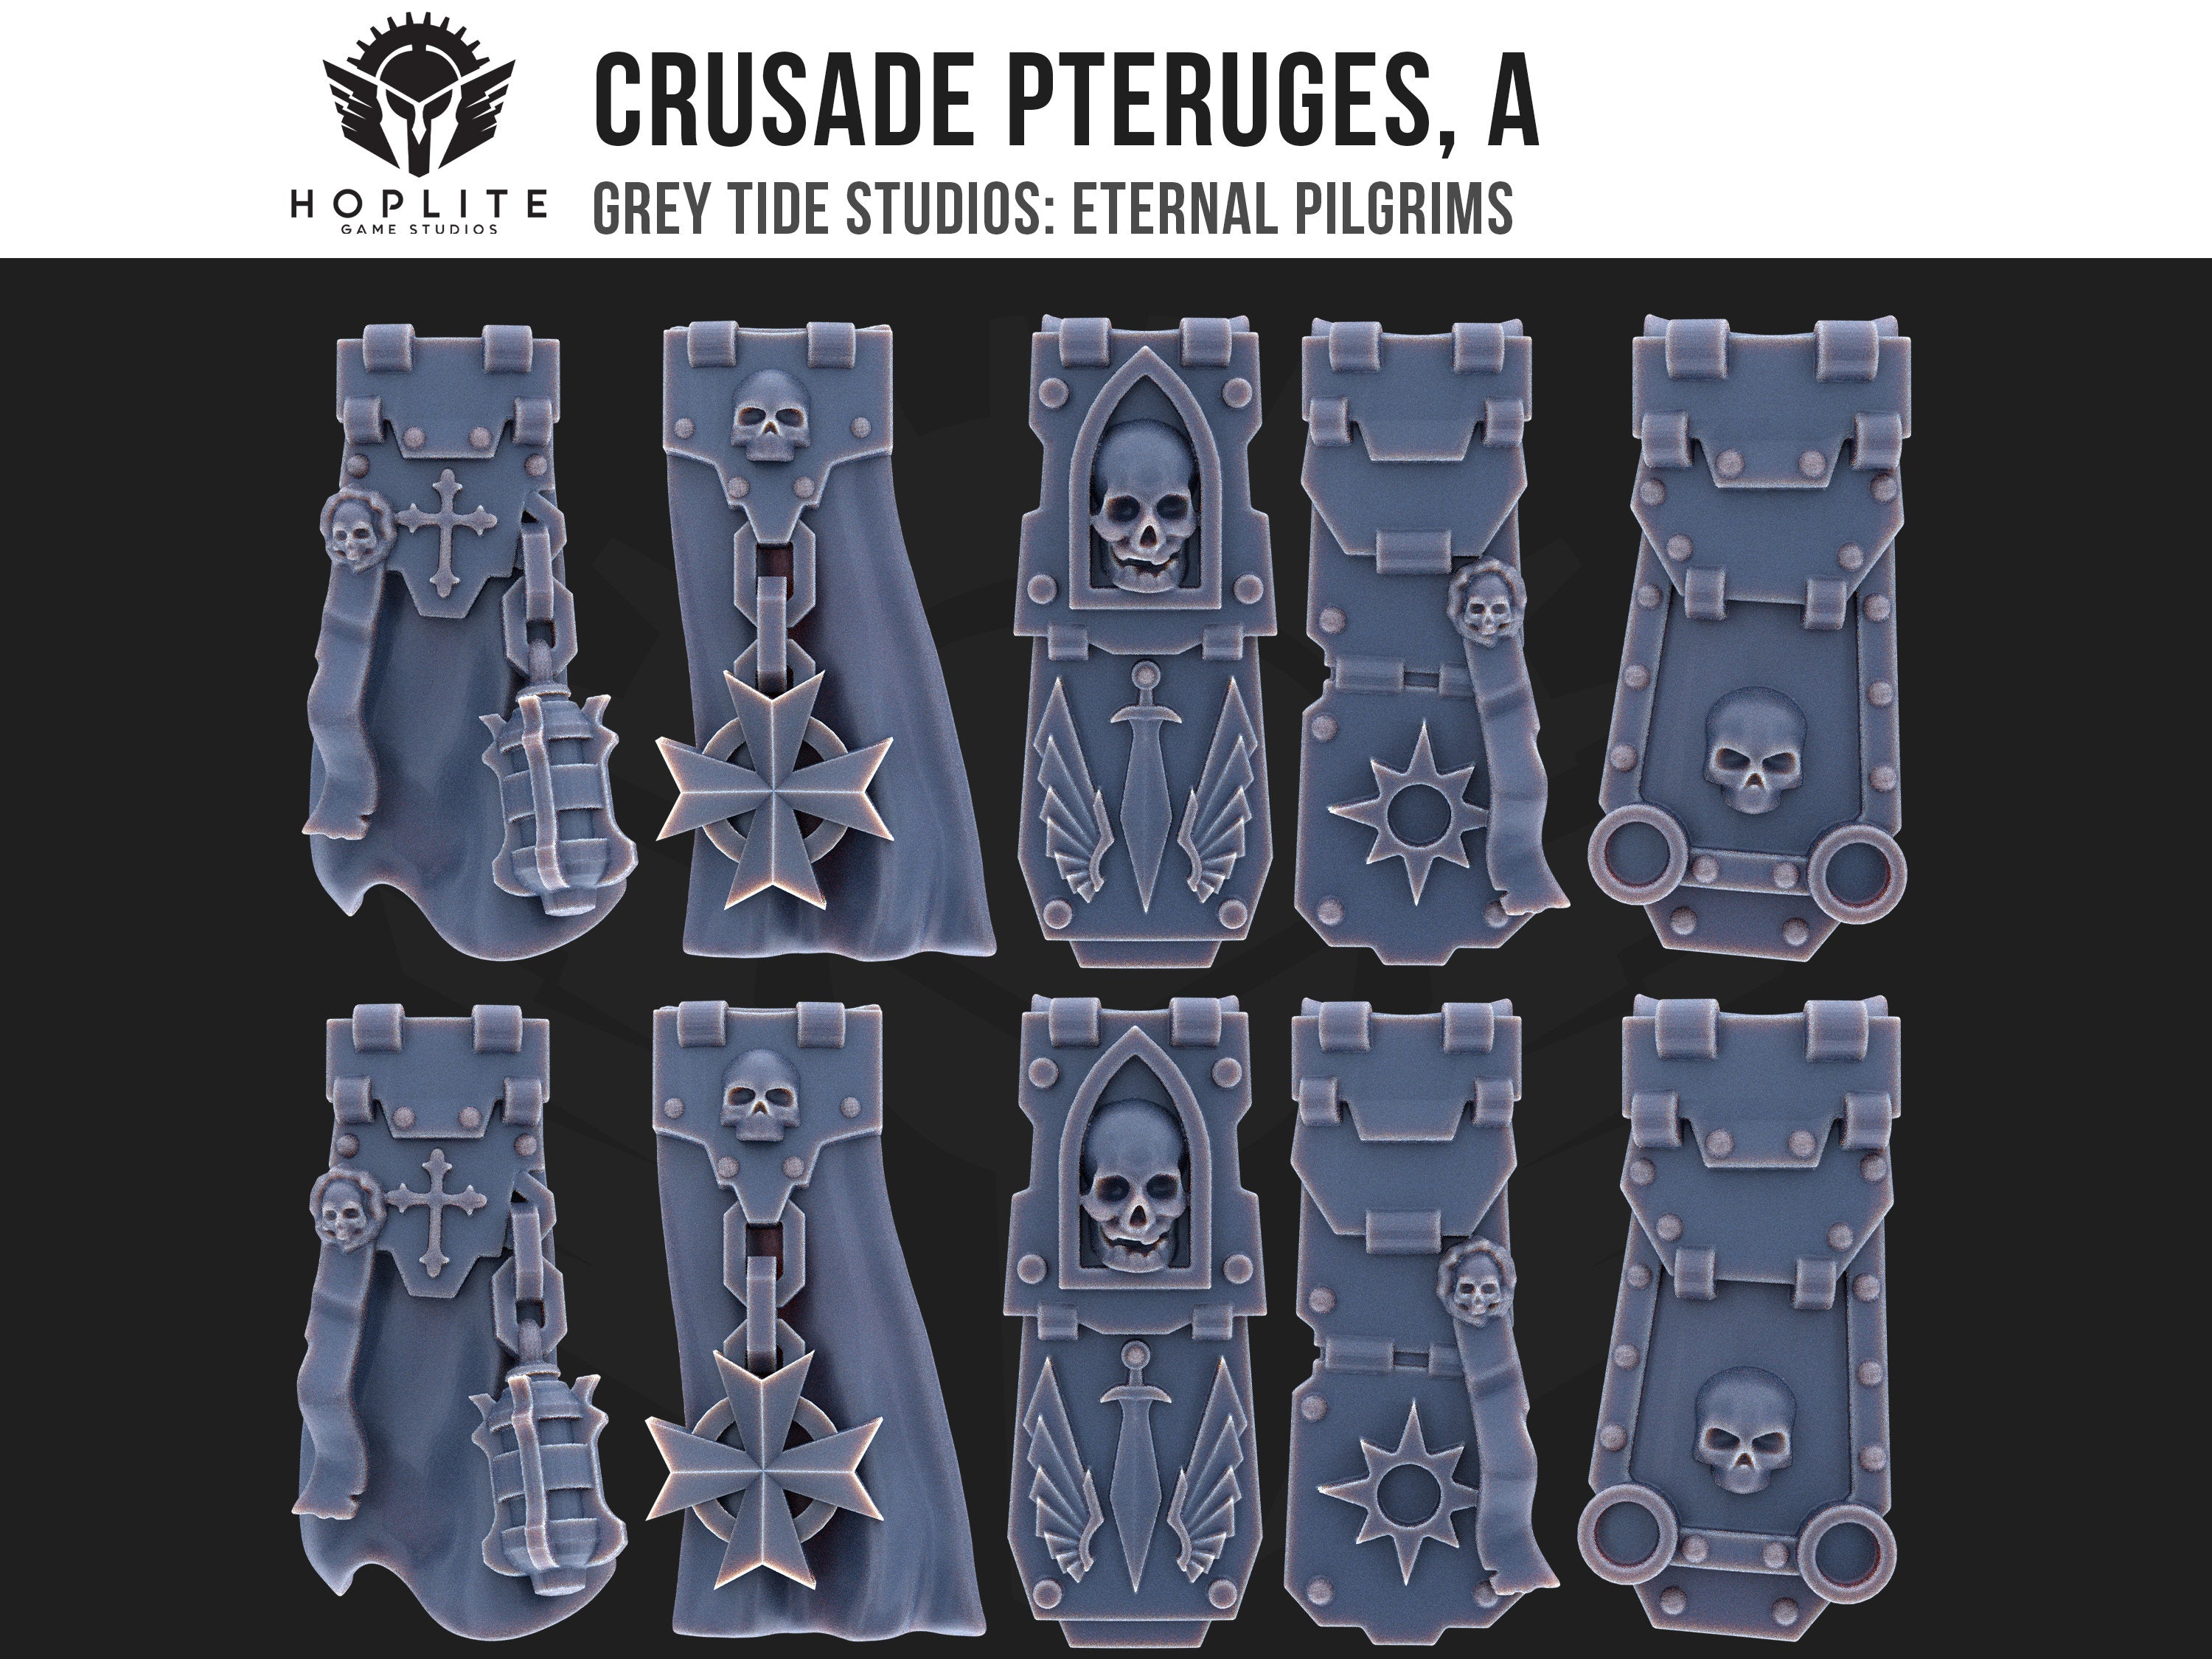 Cruzada Pteruges, A (x10) | Estudios de marea gris | Peregrinos eternos | Piezas y brocas de conversión